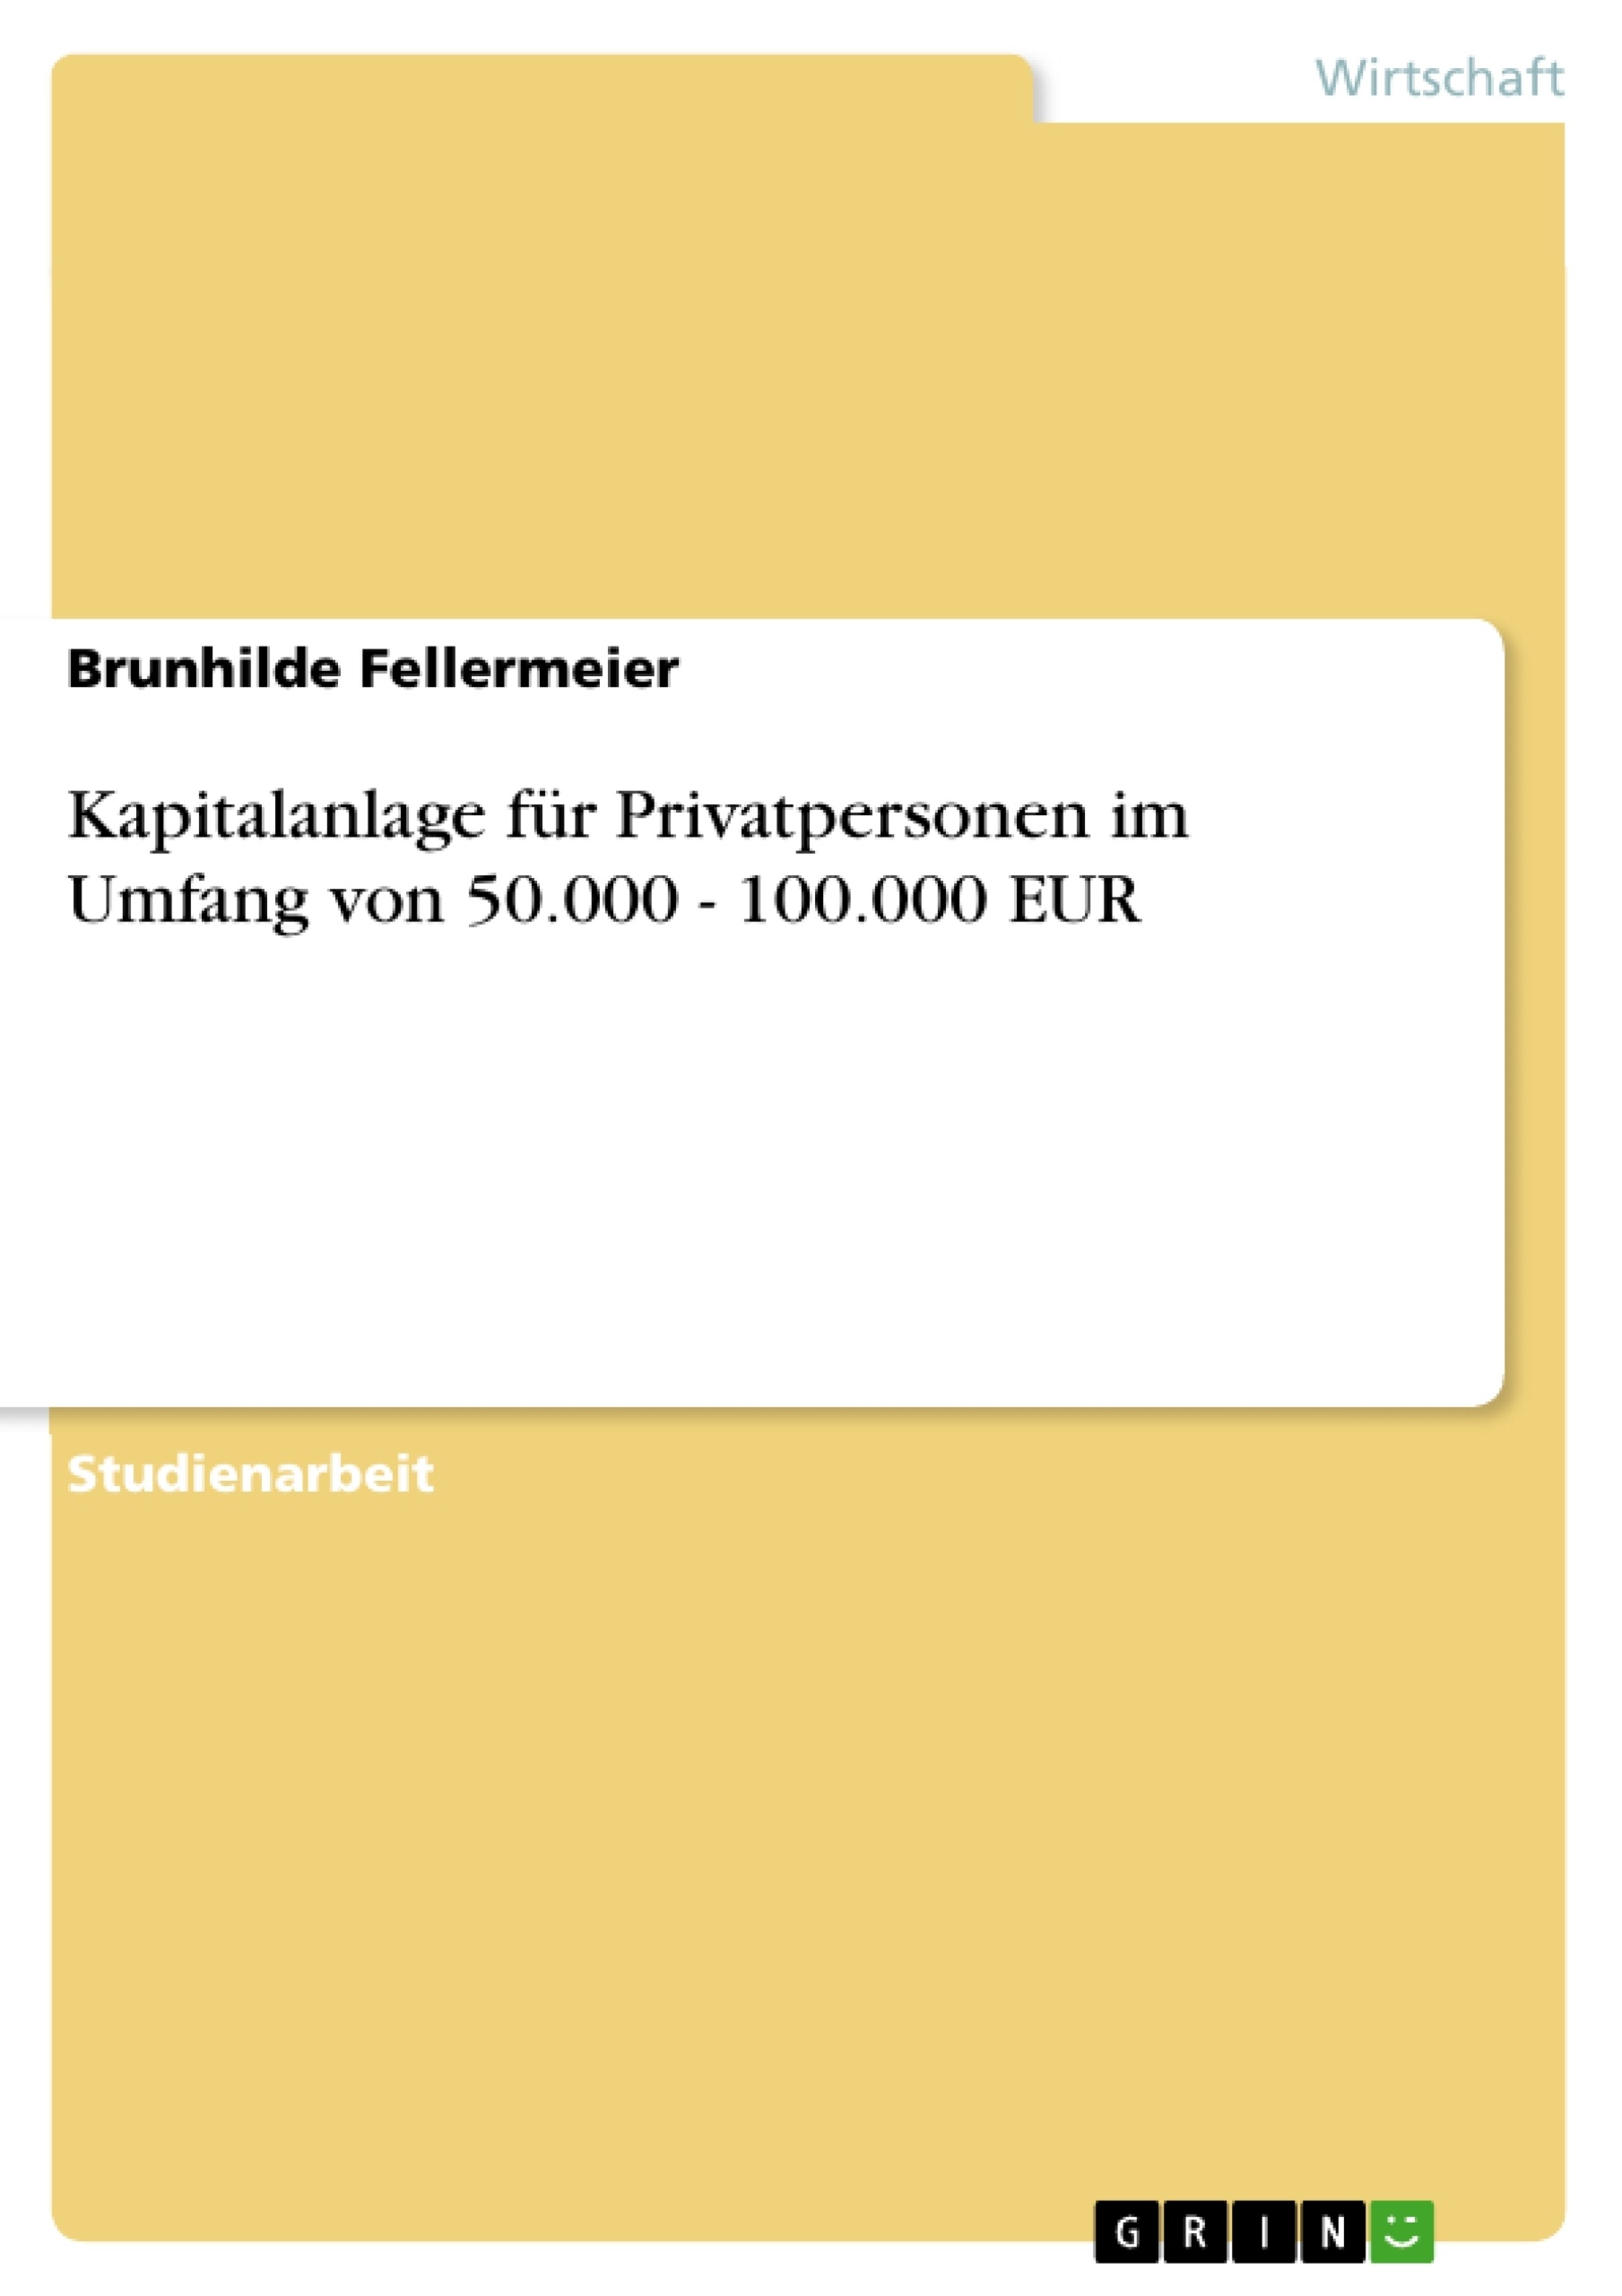 Title: Kapitalanlage für Privatpersonen im Umfang von 50.000 - 100.000 EUR